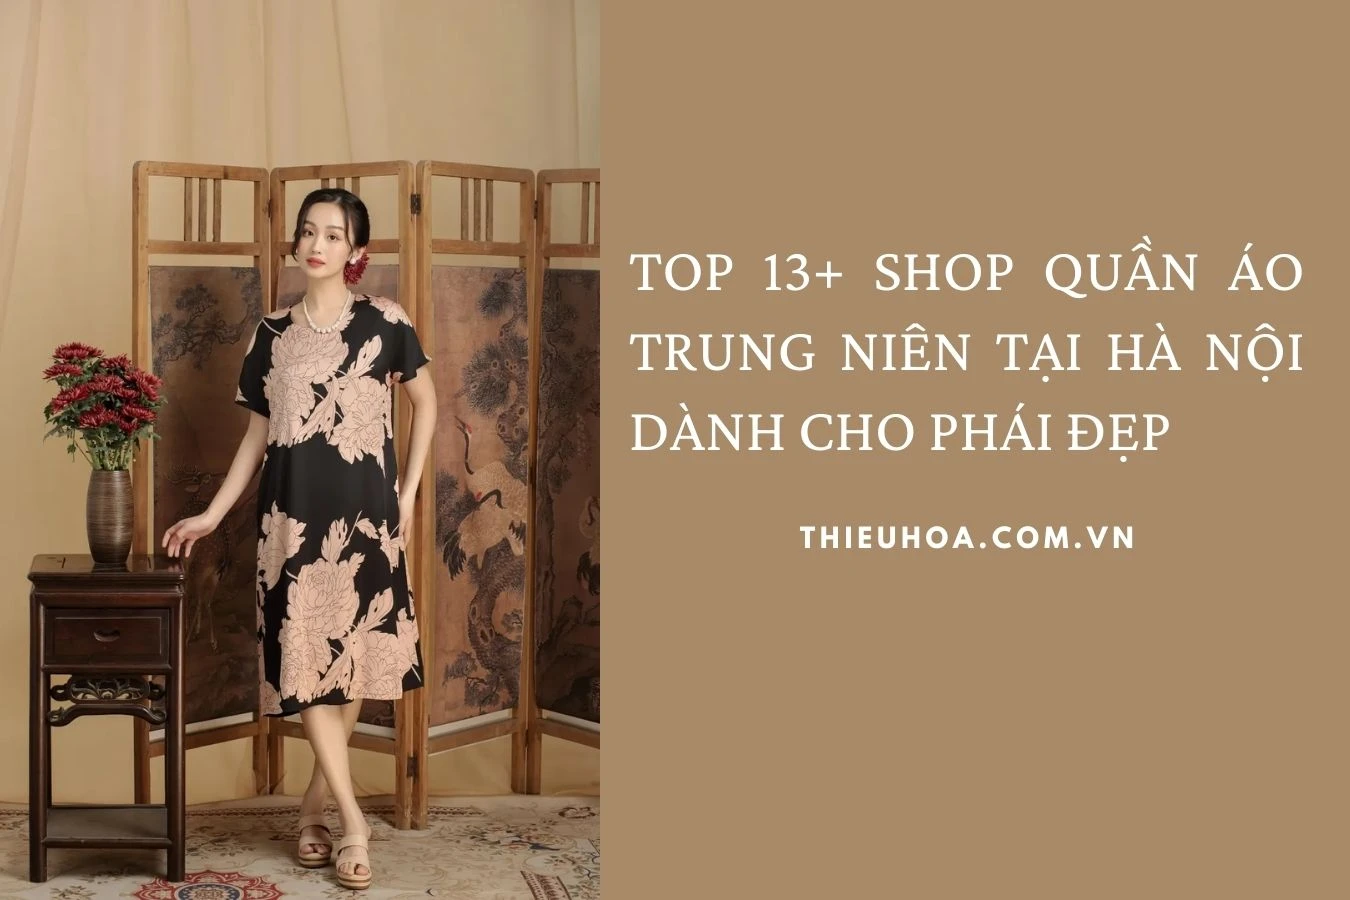 TOP 13+ Shop quần áo trung niên tại Hà Nội dành cho phái đẹp